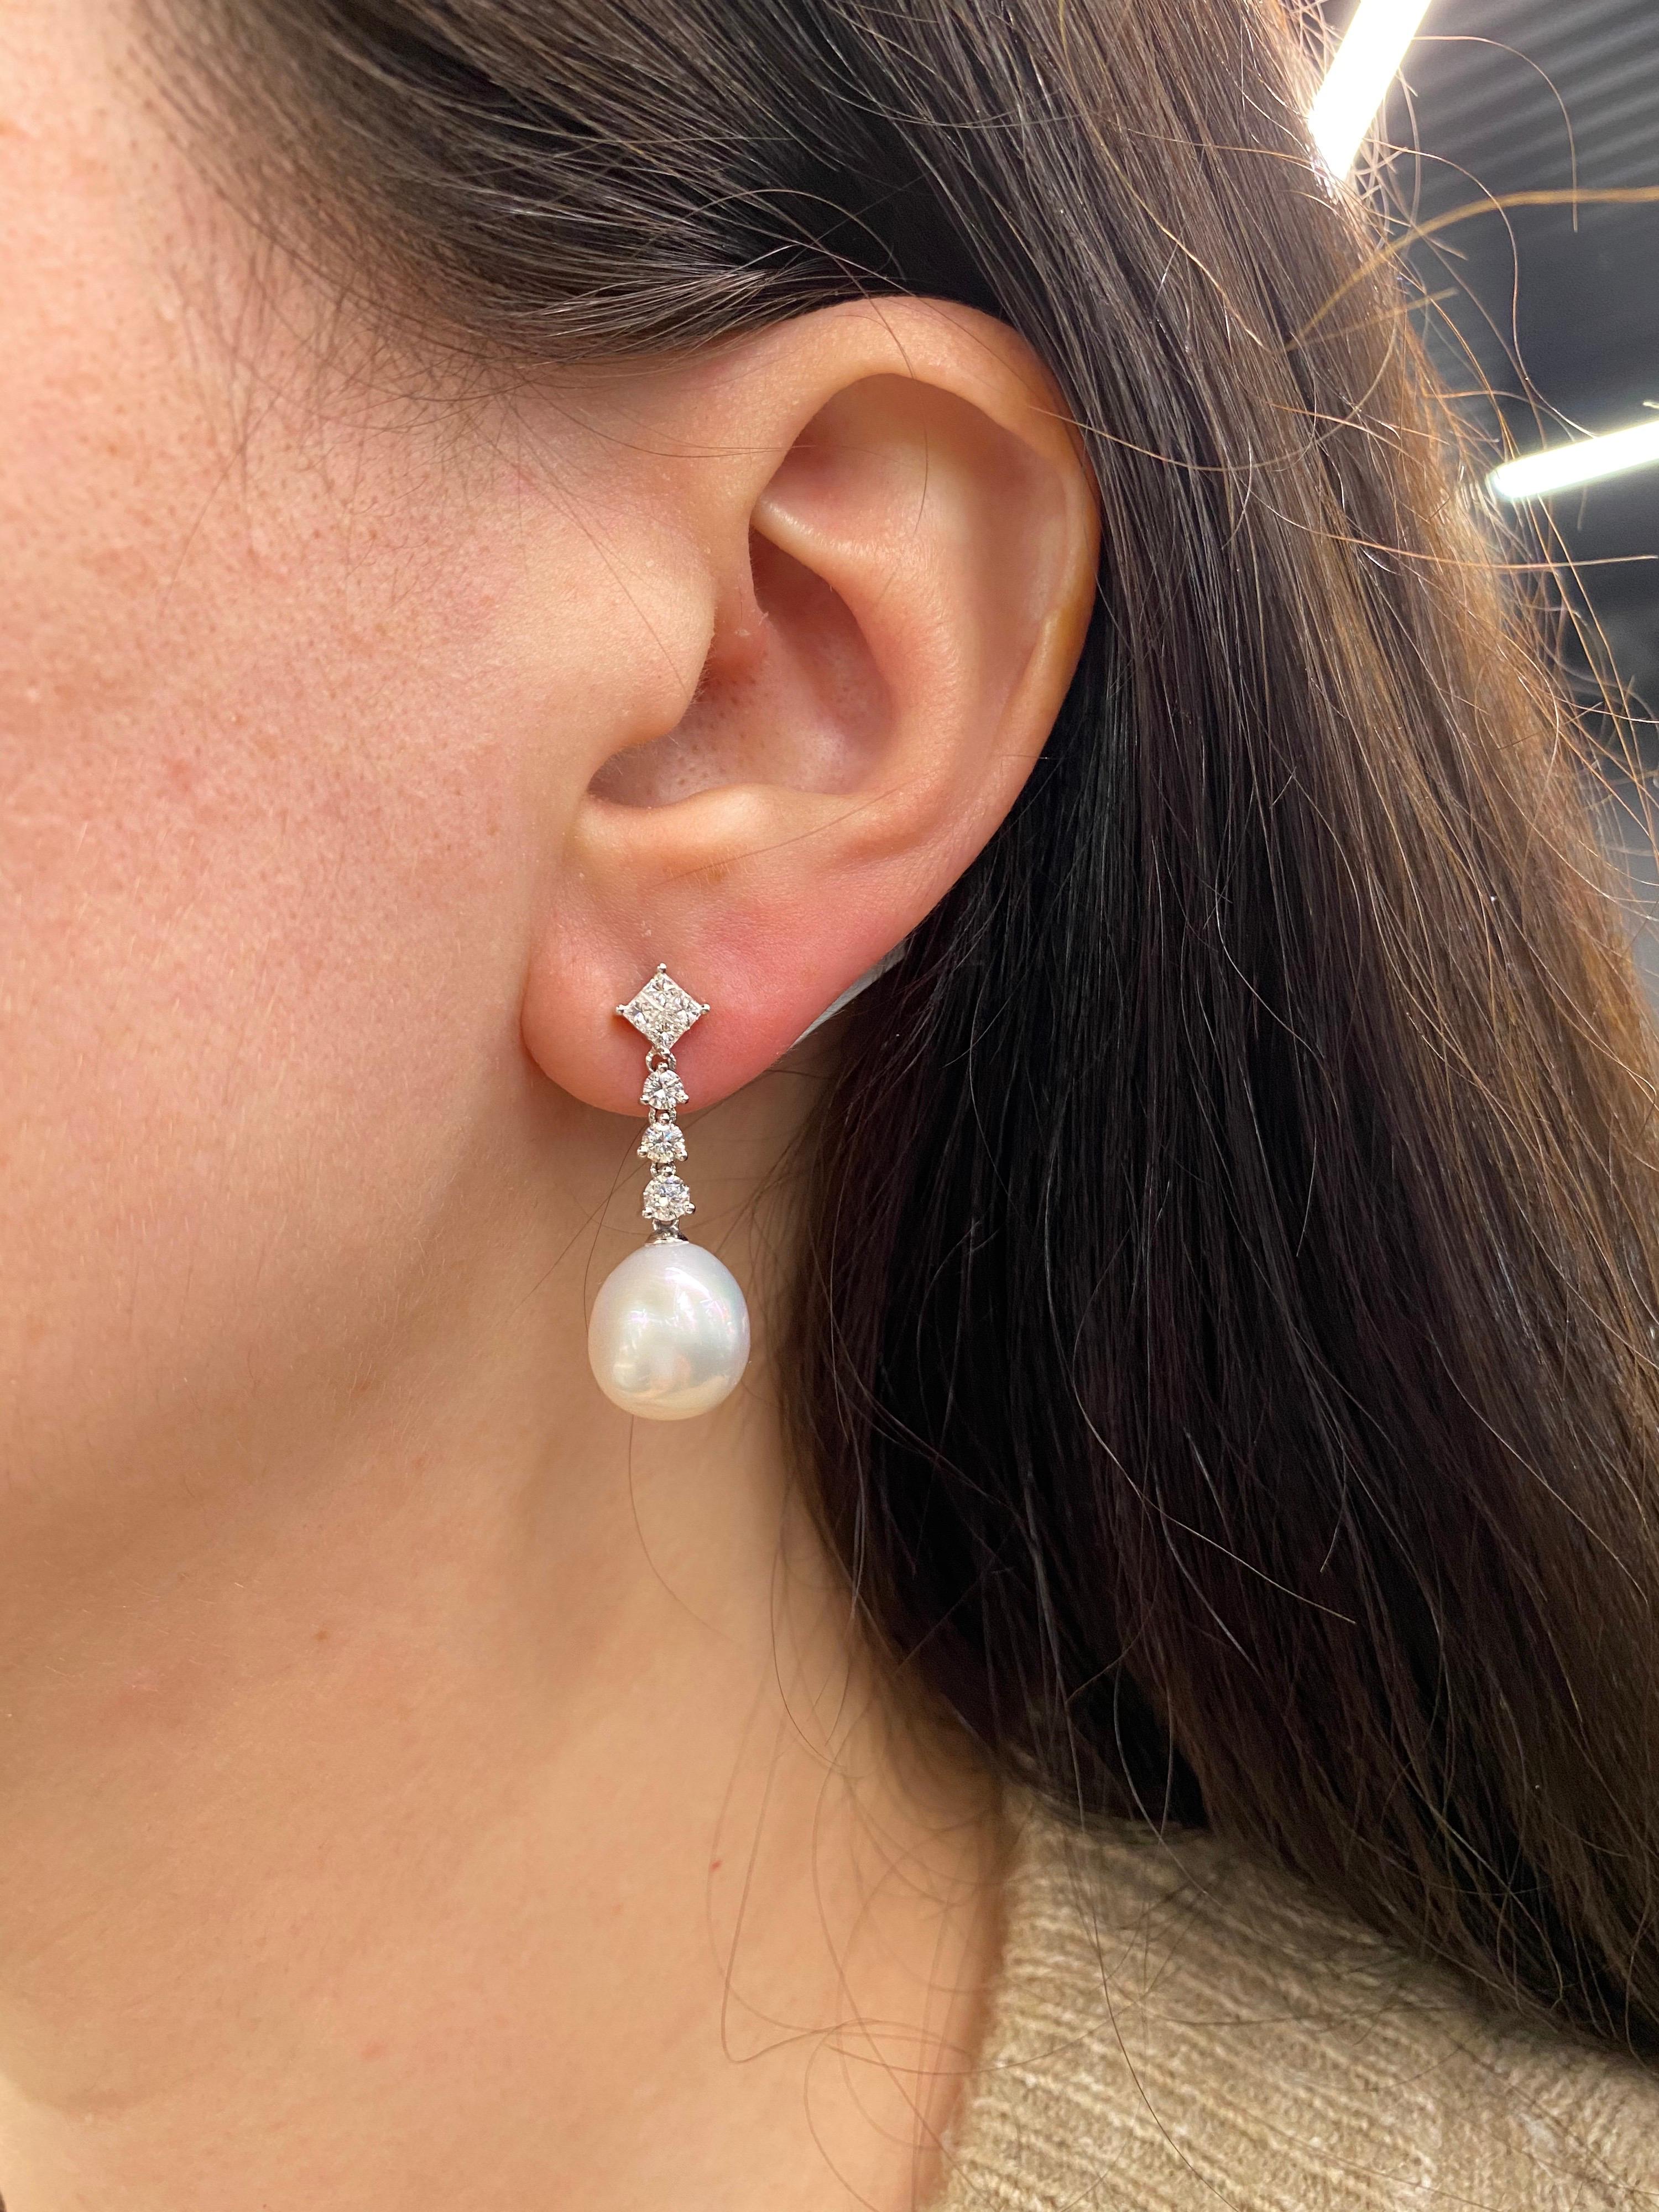 1 carat diamond drop earrings